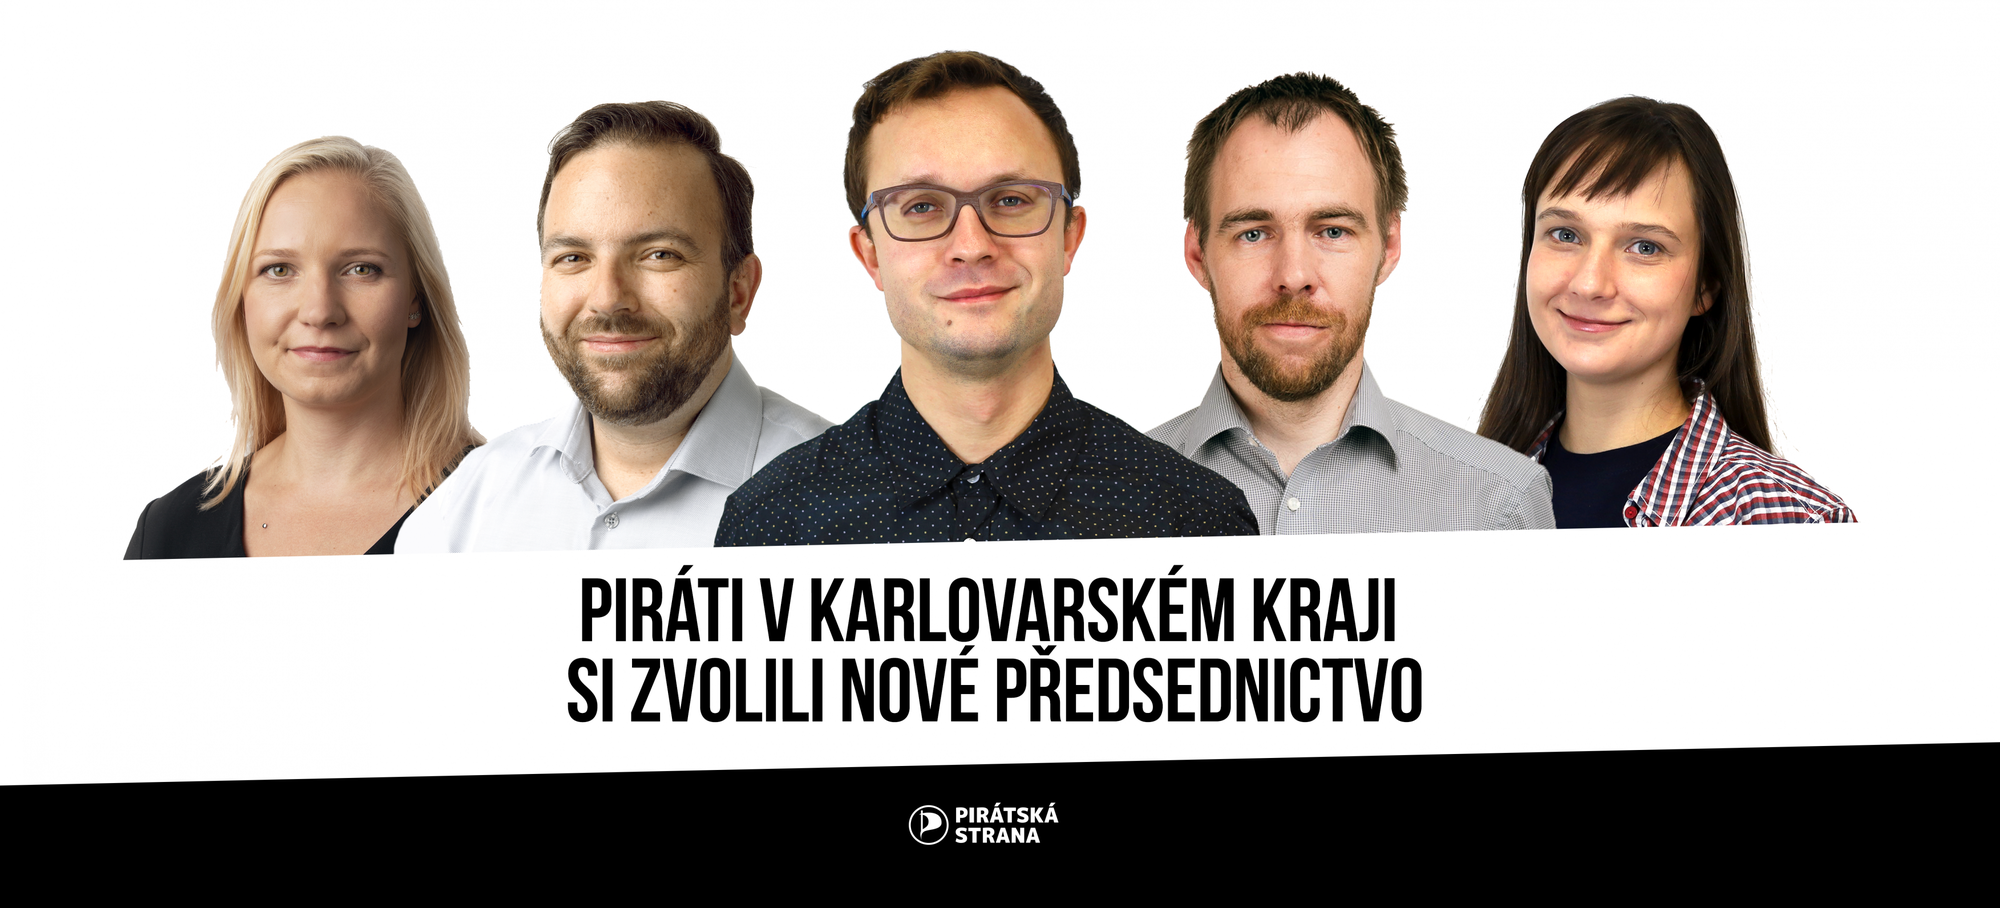 Piráti v Karlovarském kraji si zvolili nové předsednictvo